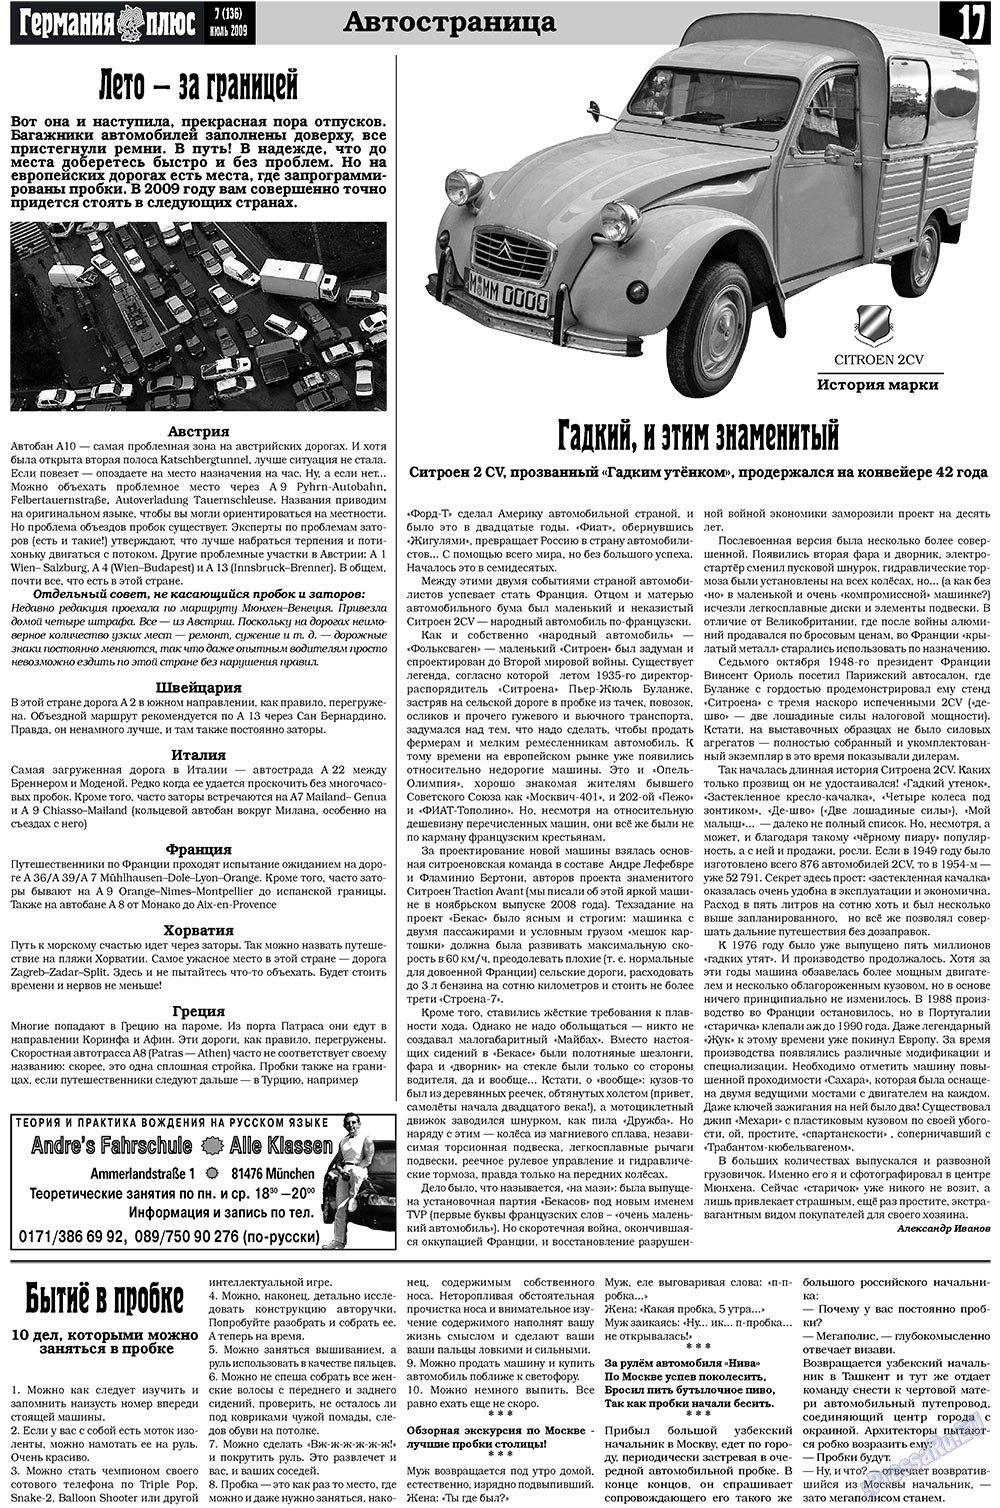 Германия плюс (газета). 2009 год, номер 7, стр. 21